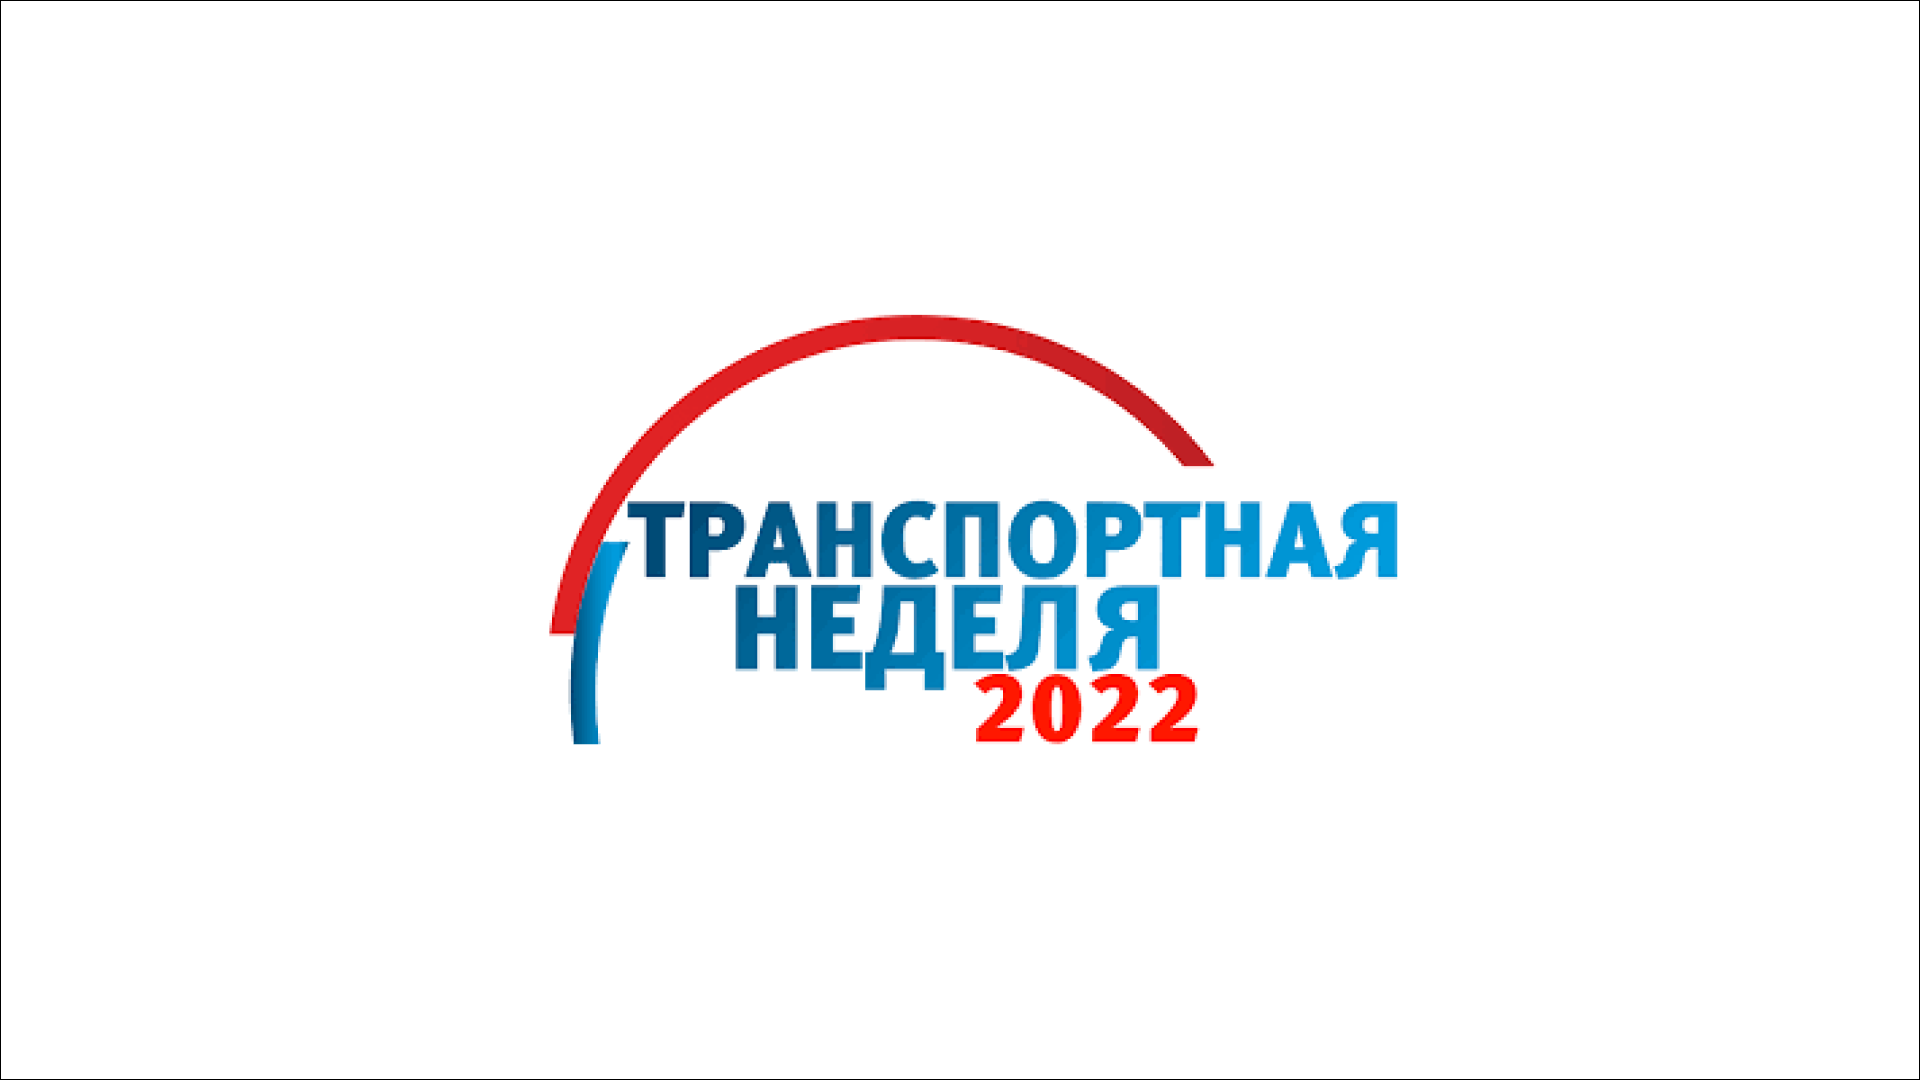 «Транспортная неделя» пройдёт в Москве с 14 по 19 ноября 2022 года